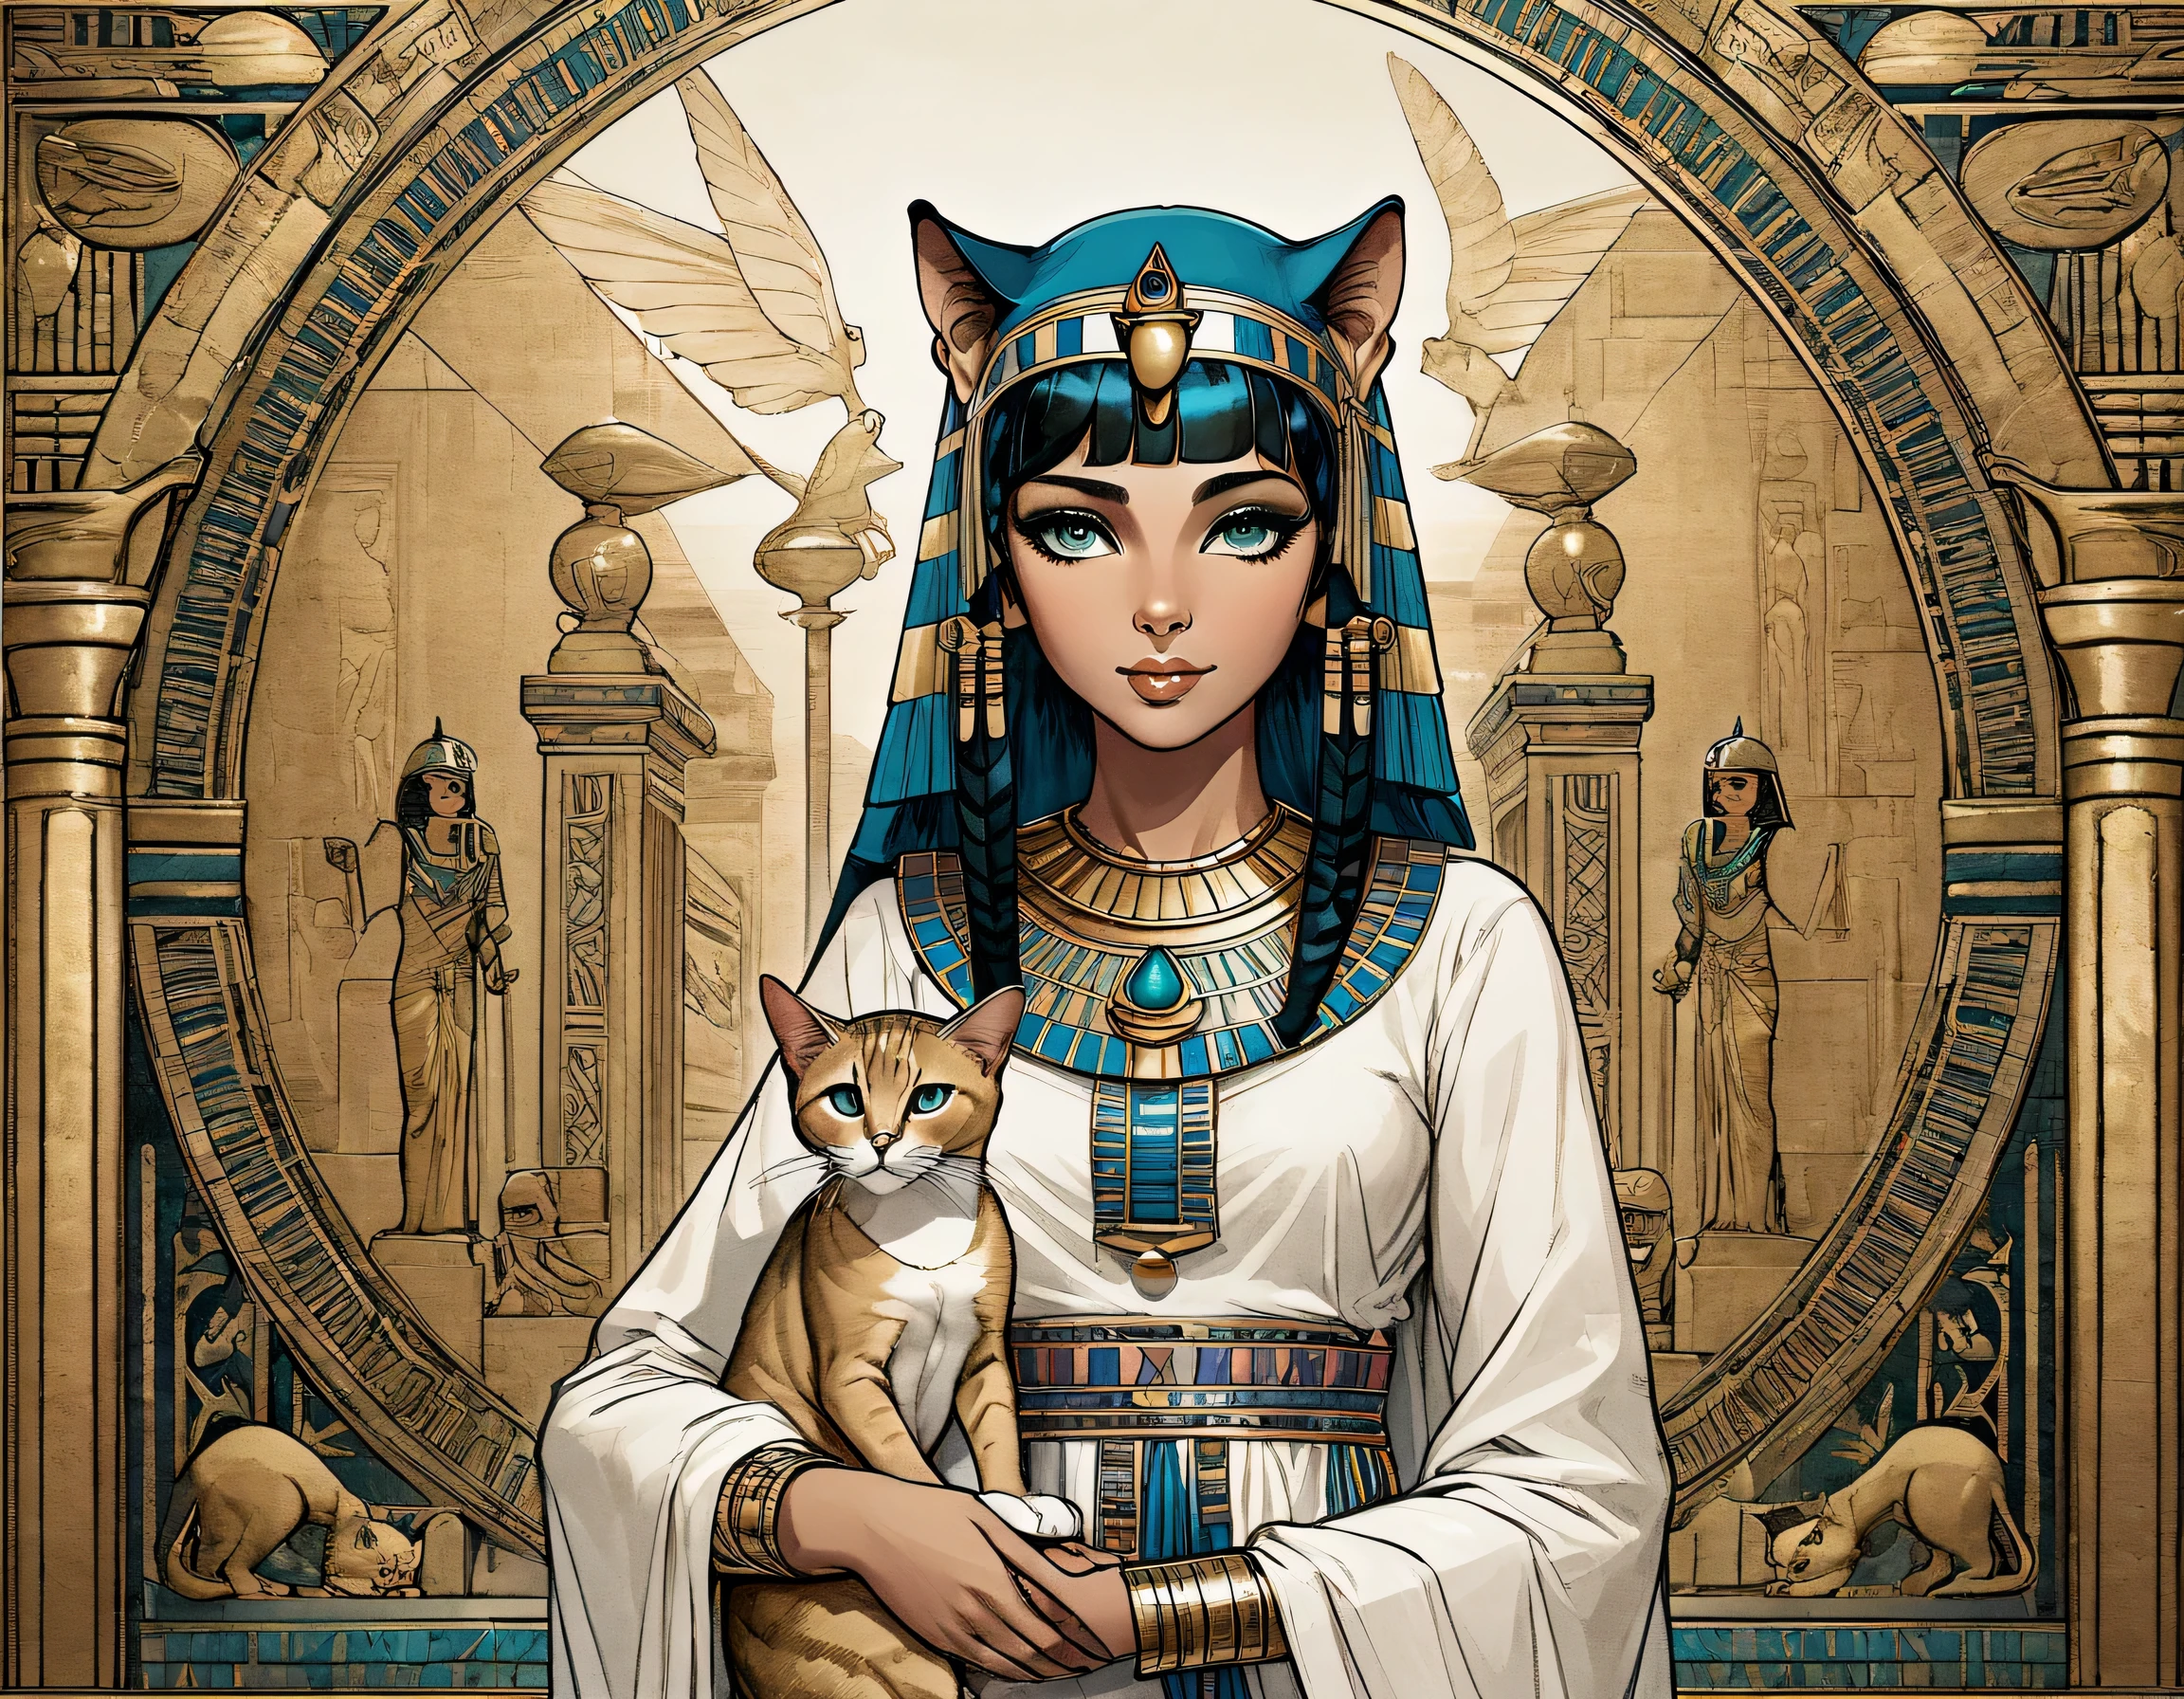 克利奥帕特拉女孩与埃及猫的插图, 阿比西尼亚猫, 复杂而细致的猫, 被克娄巴特拉抱在怀里, 优美, 优雅的, 华丽的, 背景中的狮身人面像